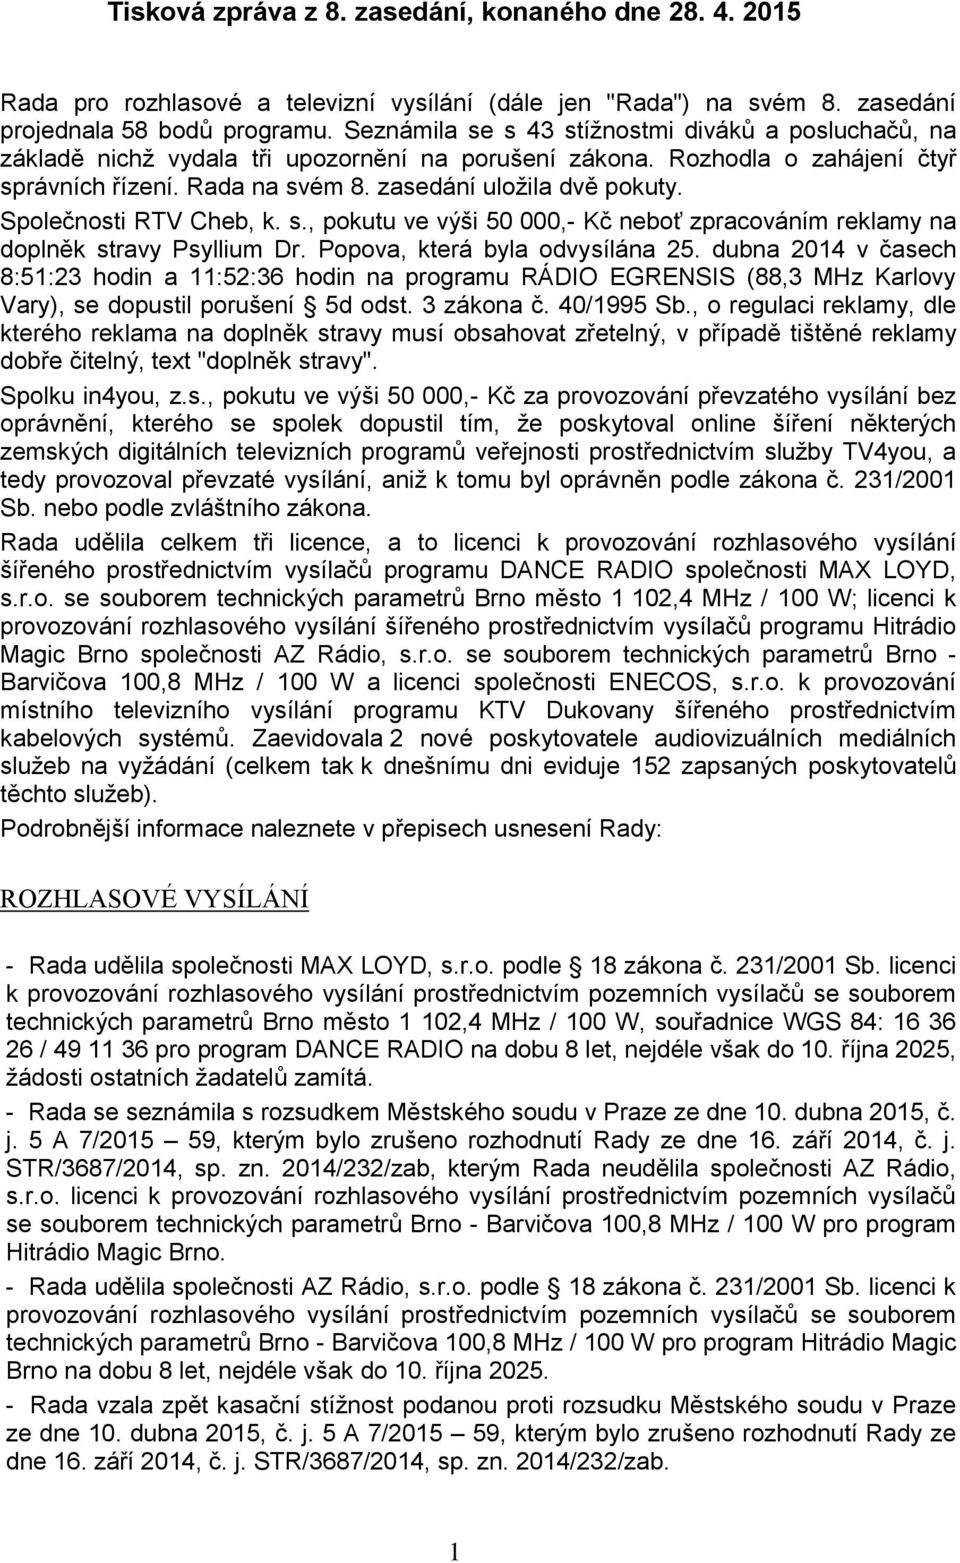 Společnosti RTV Cheb, k. s., pokutu ve výši 50 000,- Kč neboť zpracováním reklamy na doplněk stravy Psyllium Dr. Popova, která byla odvysílána 25.